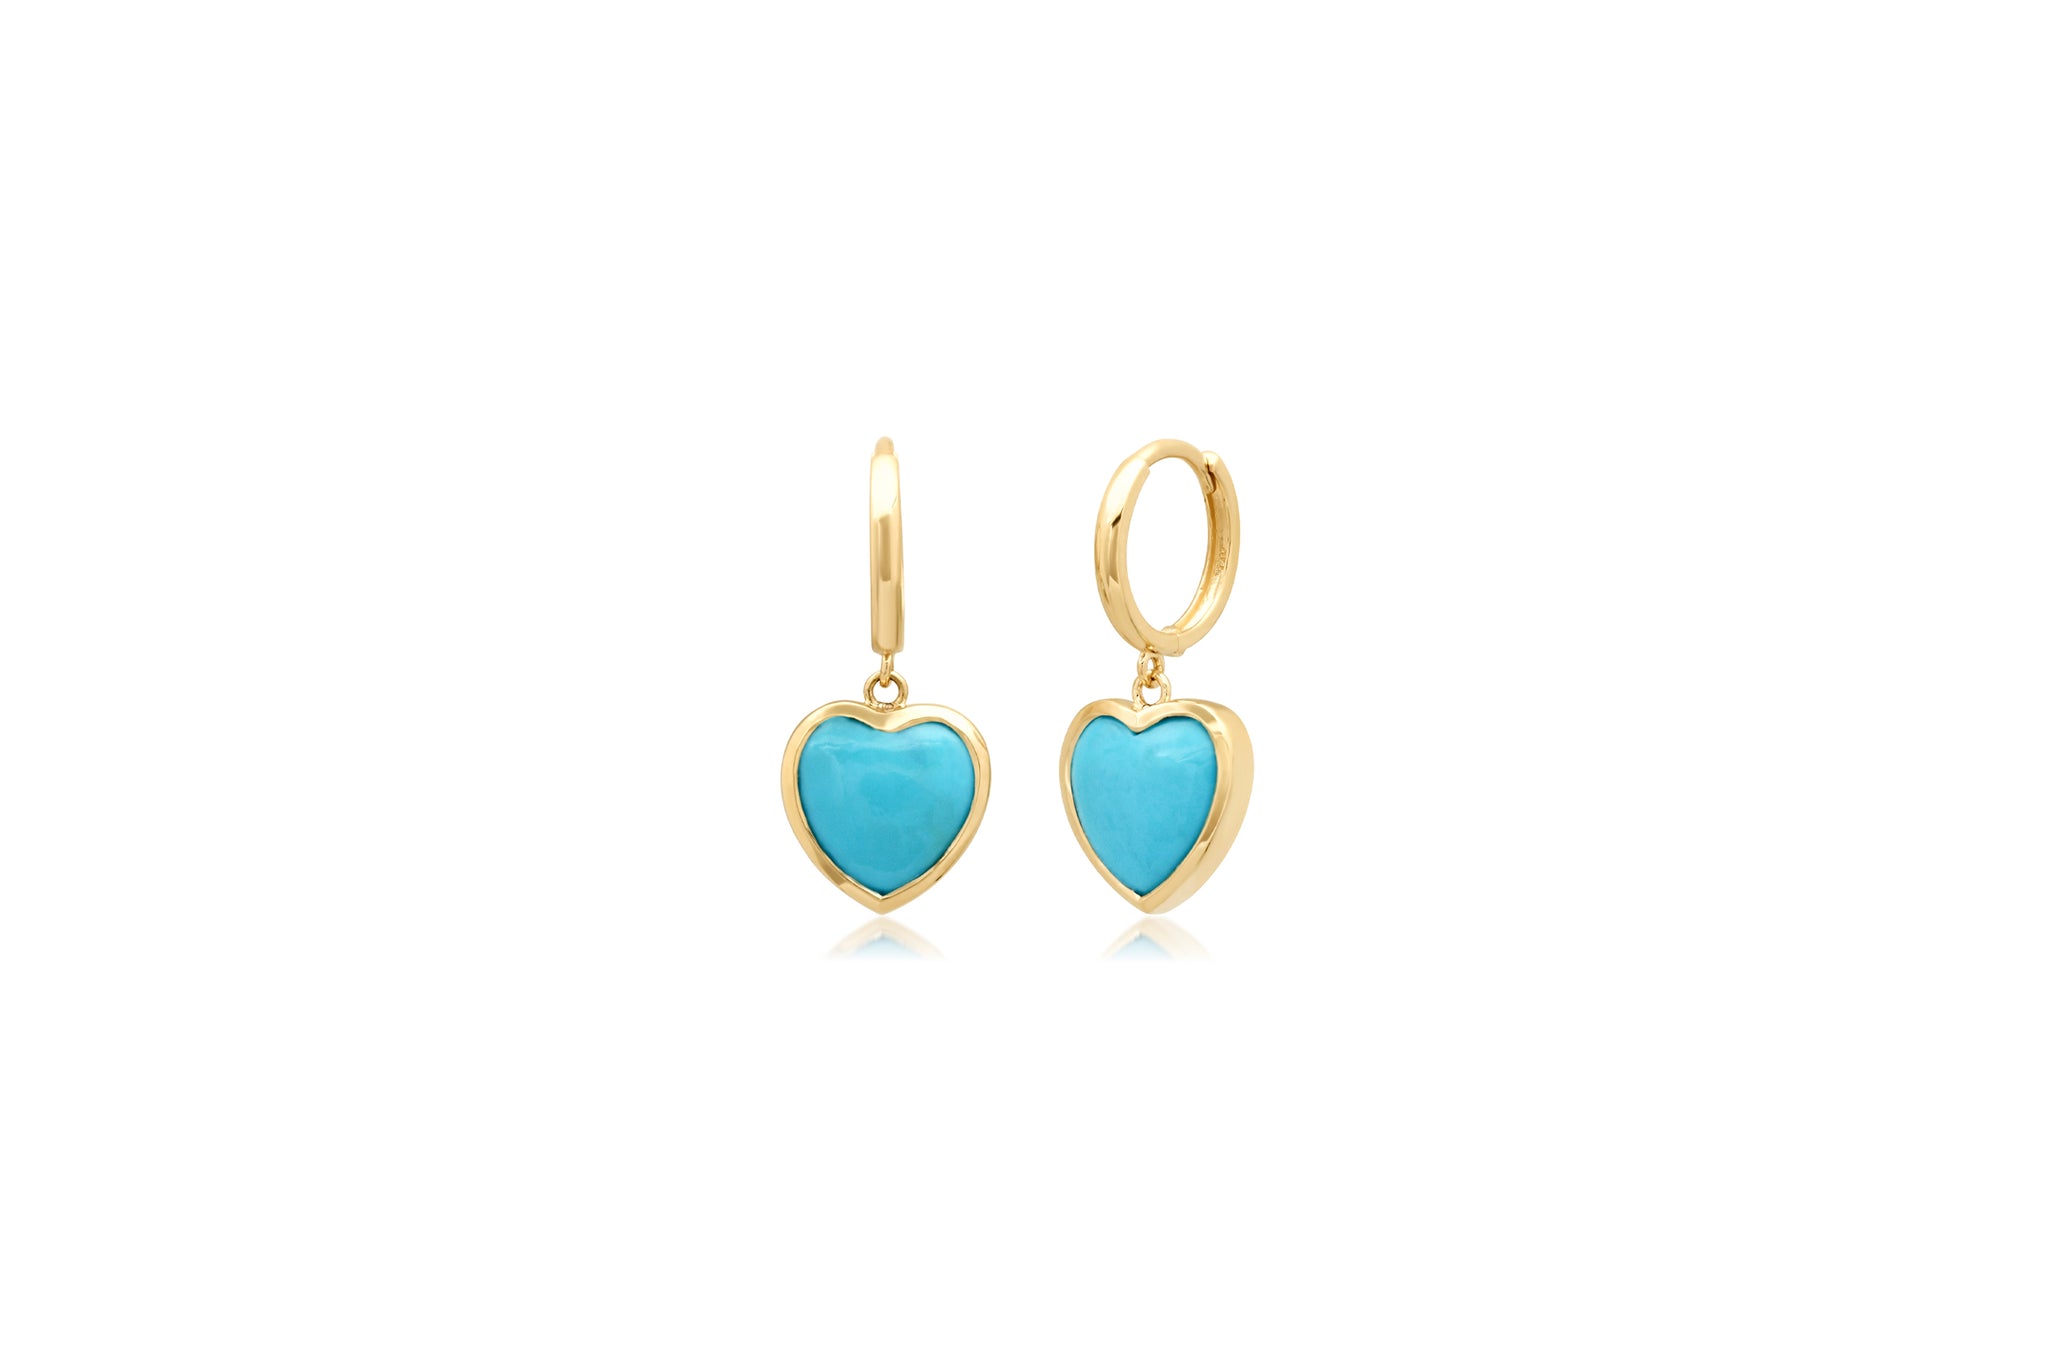 Small Turquoise Framed Heart Earrings